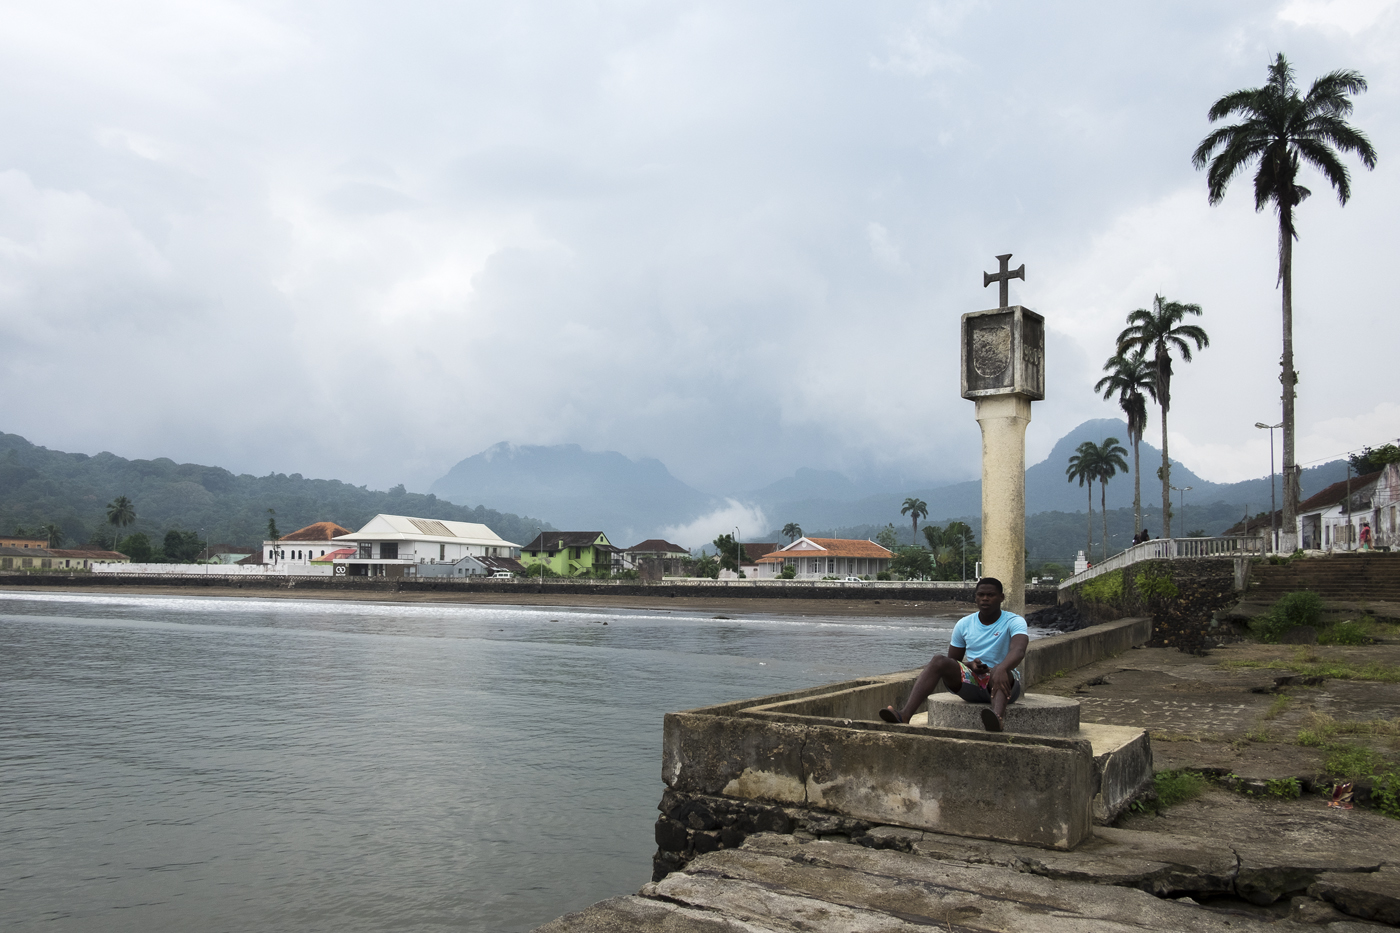 Diário de viagem documental construído em São Tomé e Príncipe em 2016